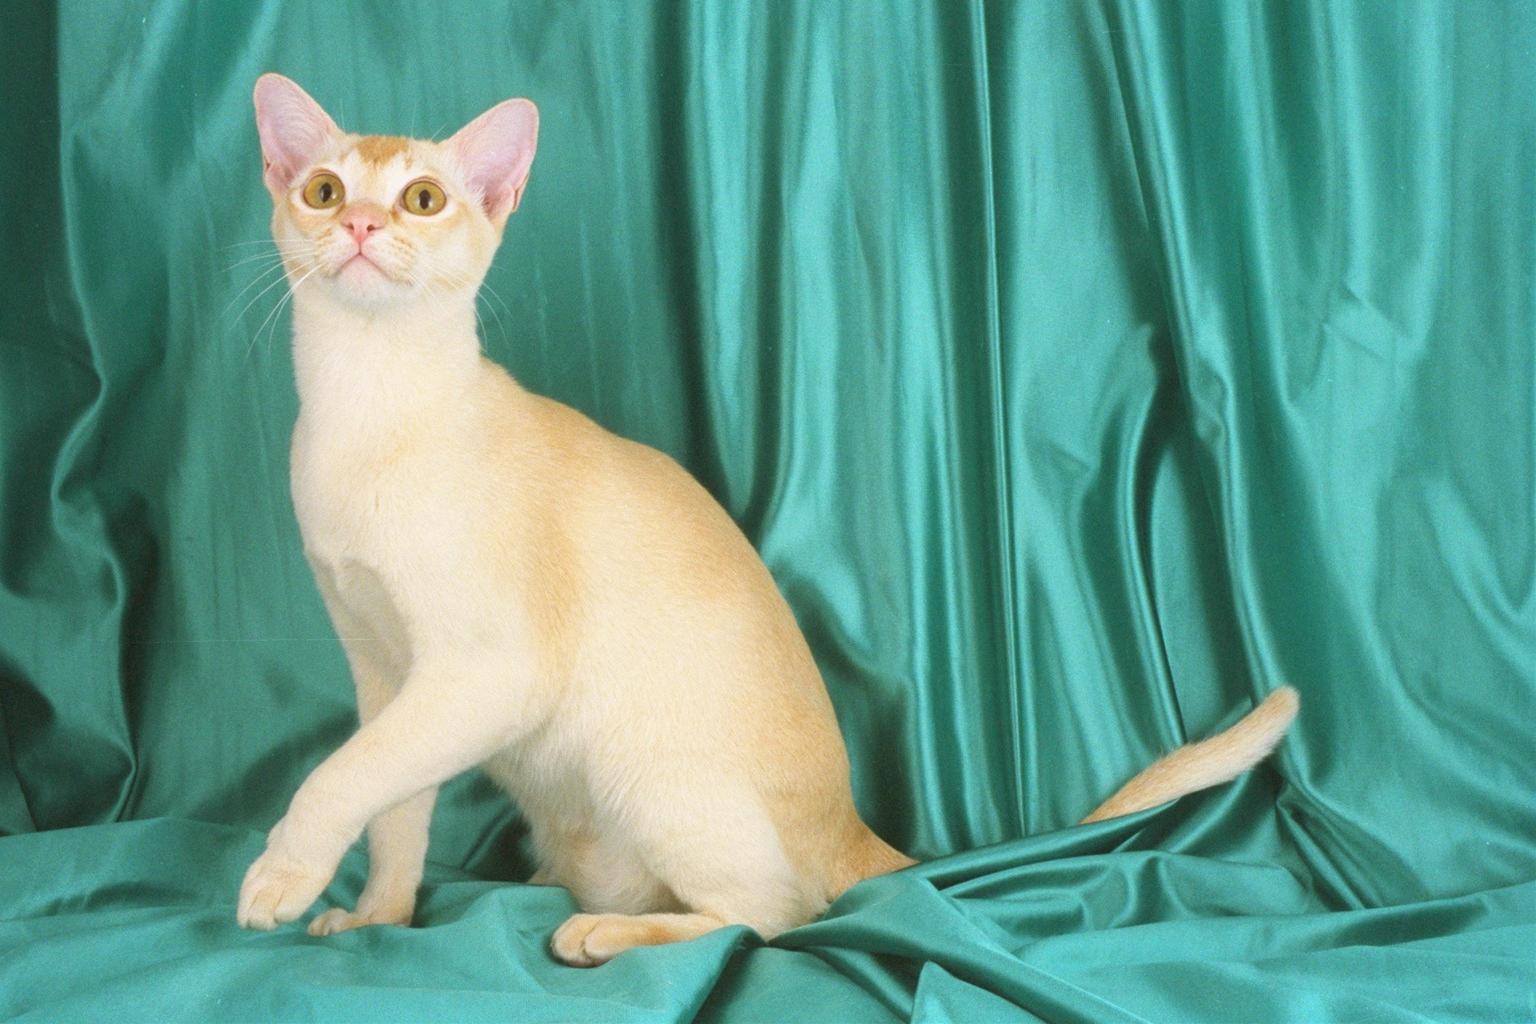 かわいい猫画像No.9「猫−バーミーズの壁紙画像「しなやかな身体・緑のカーテン」」